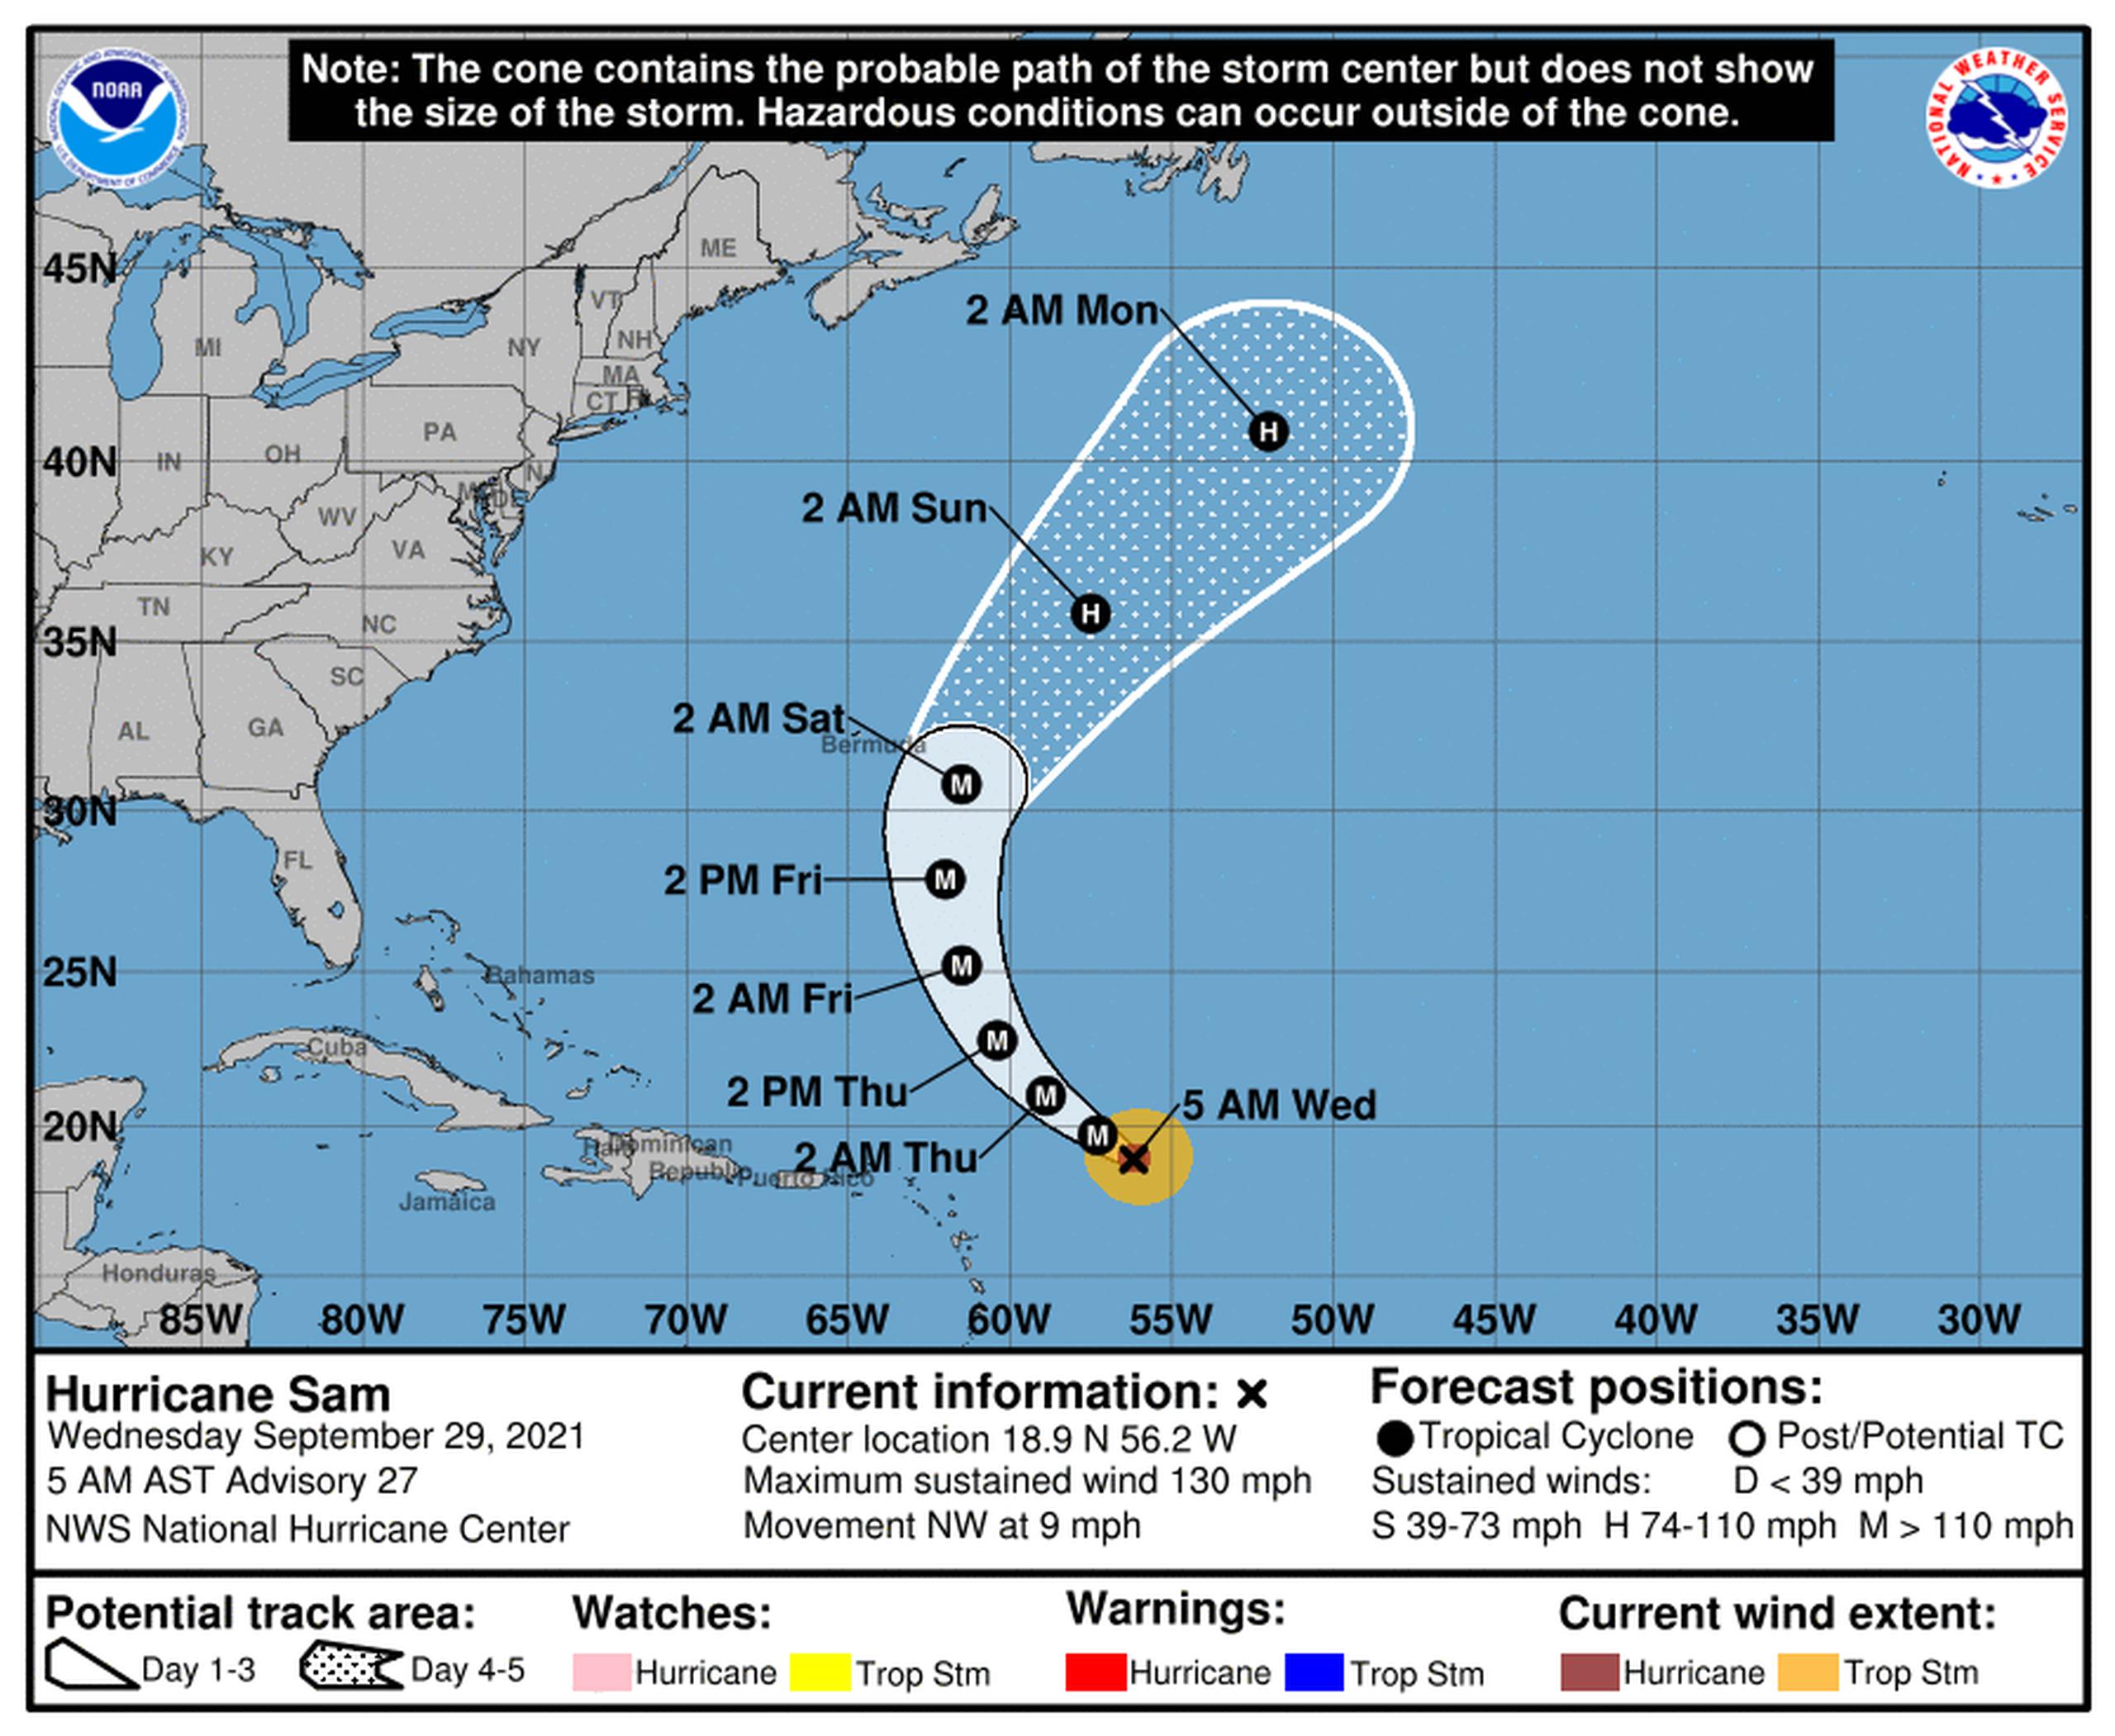 Pronóstico del huracán Sam emitido a las 5:00 de la mañana por el Centro Nacional de Huracanes.